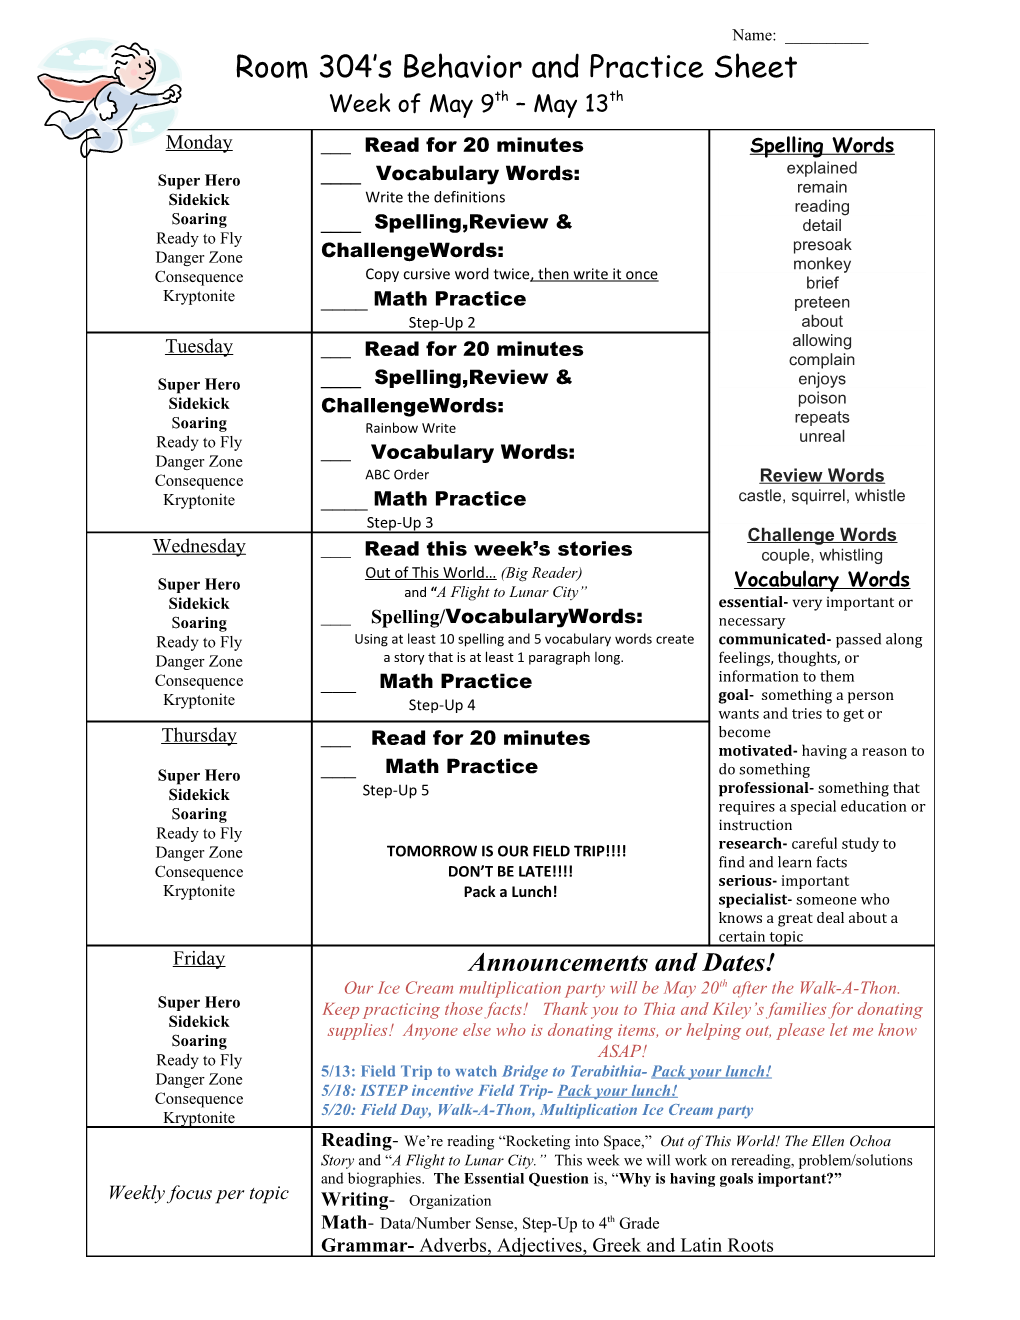 Room 304 S Behavior and Practice Sheet s2